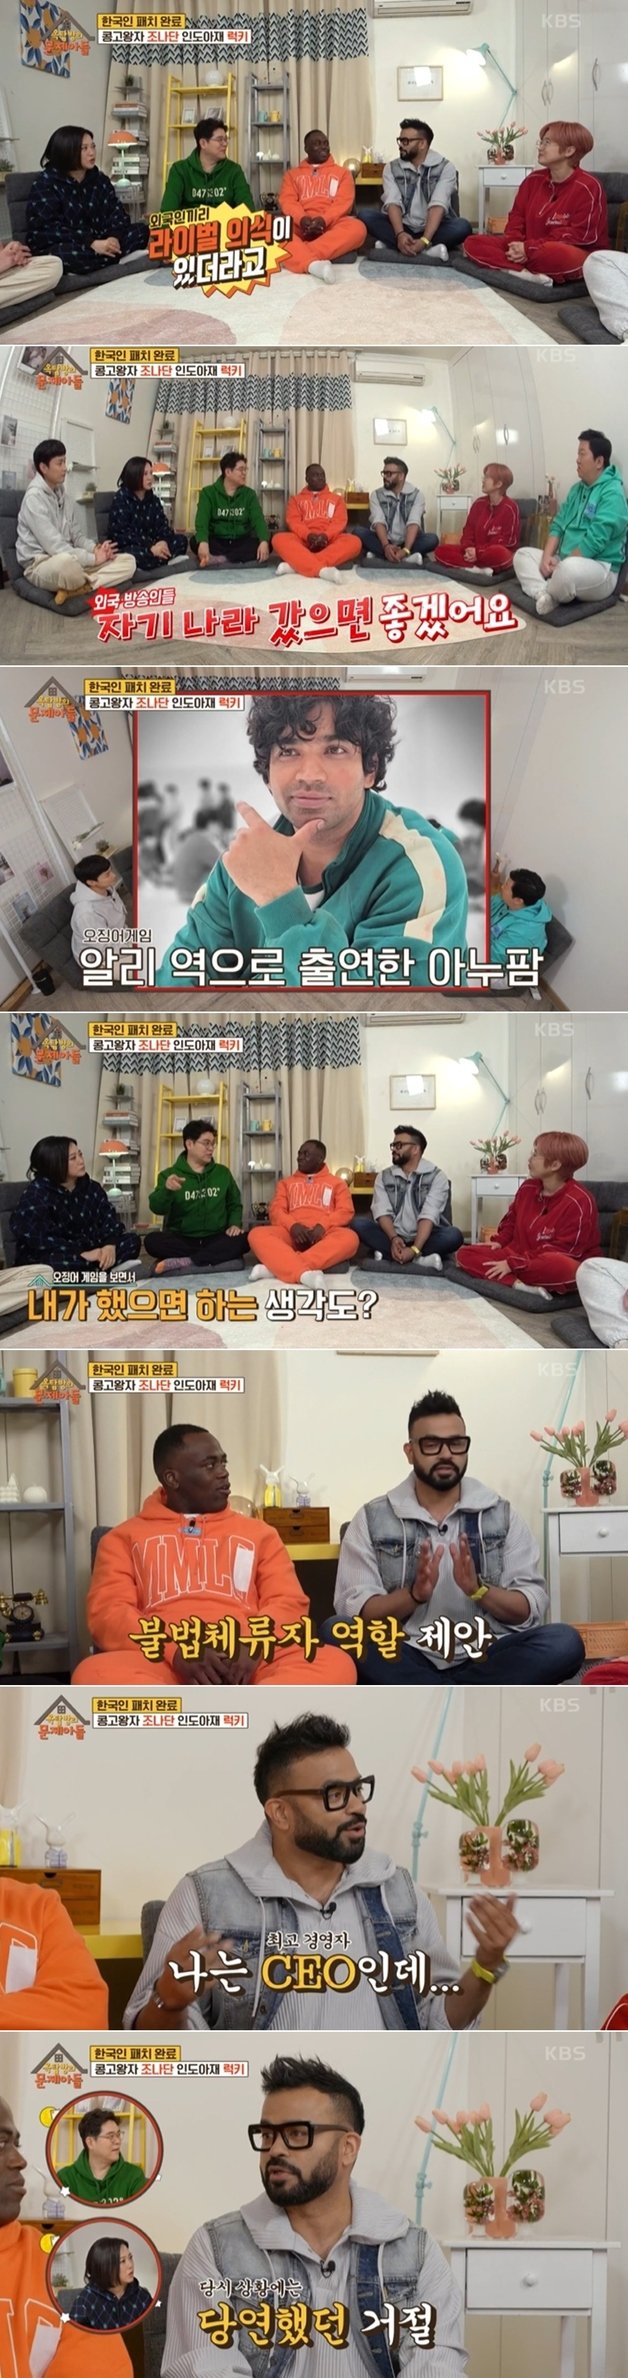 KBS 2TV 예능 프로그램 ‘옥탑방의 문제아들’ 방송 화면 갈무리